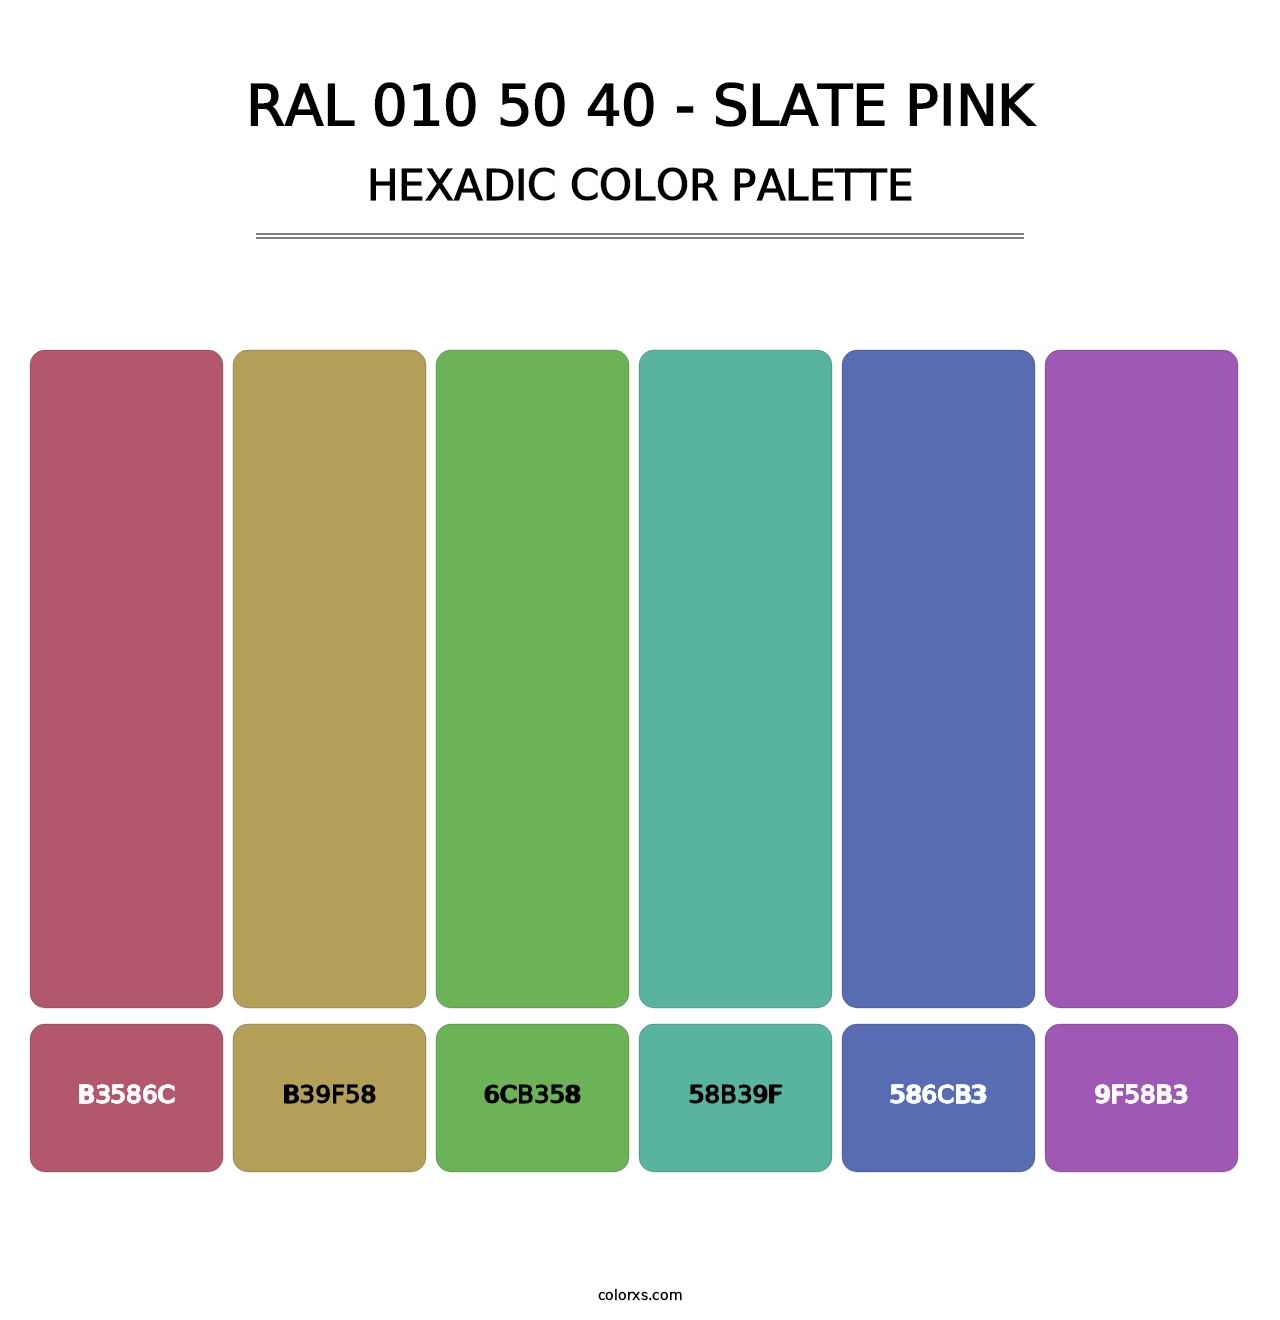 RAL 010 50 40 - Slate Pink - Hexadic Color Palette